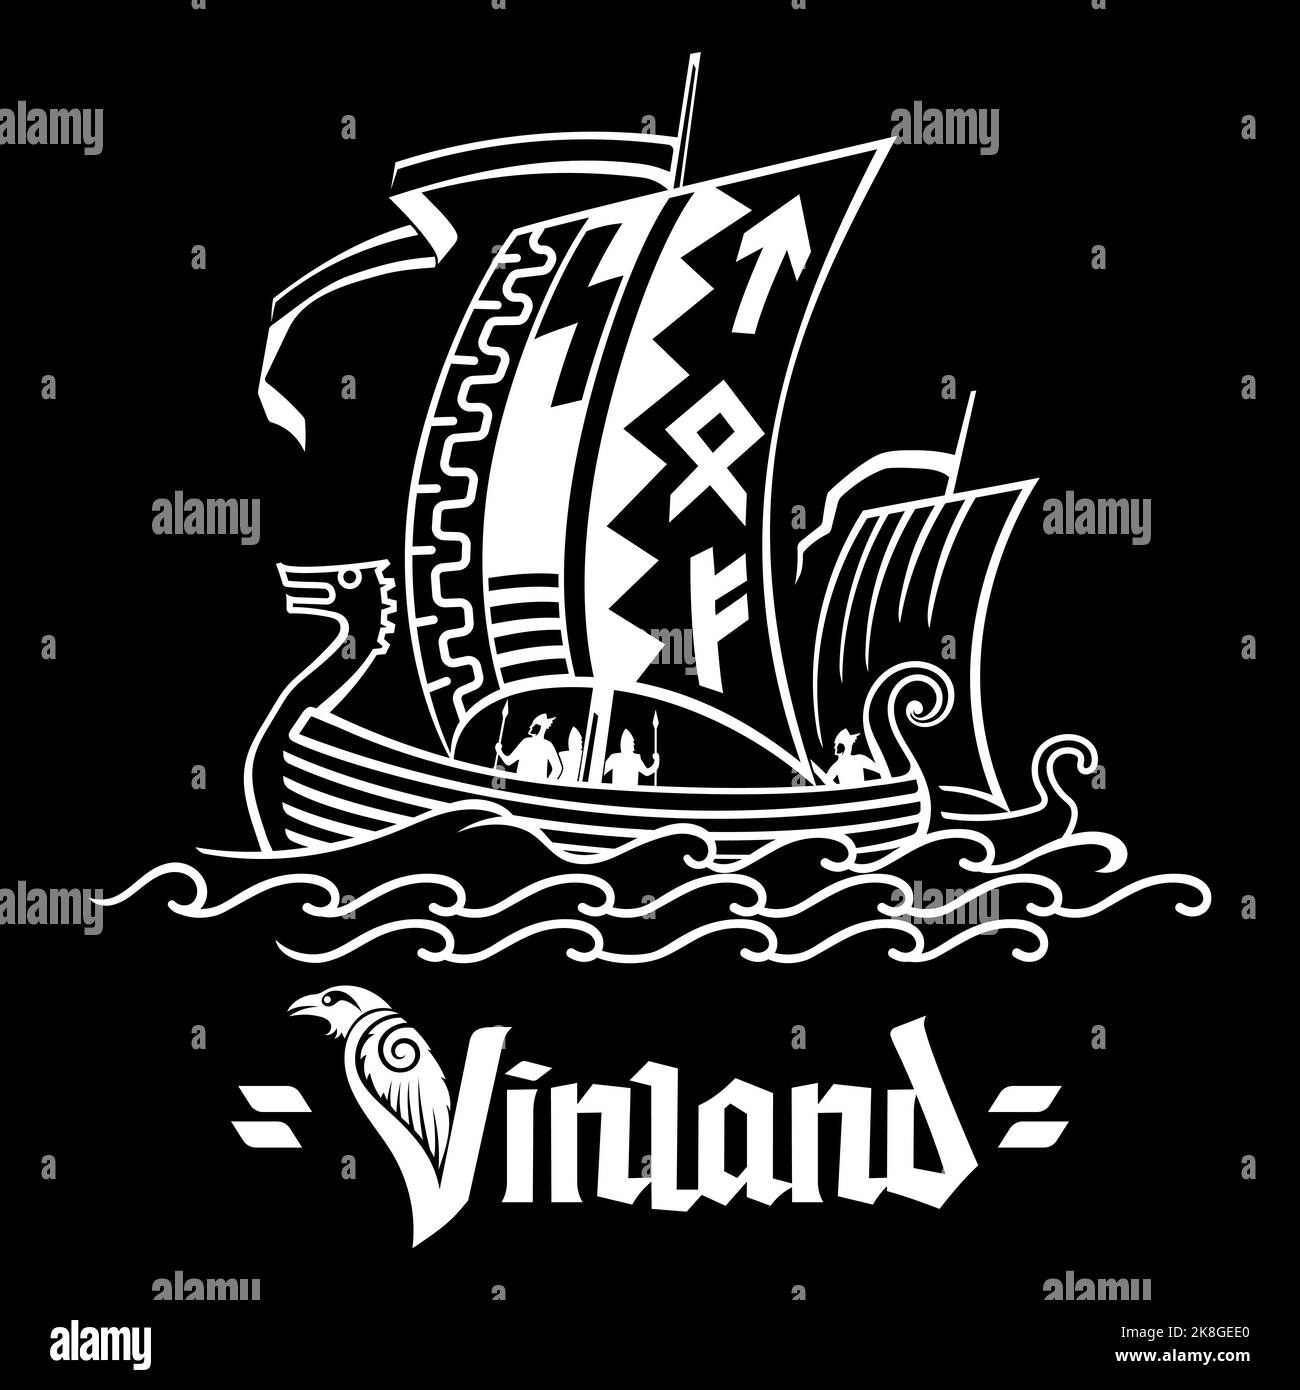 Design scandinave ancien. Bateau viking Drakkar naviguant sur les vagues peint dans un style rétro vintage Illustration de Vecteur